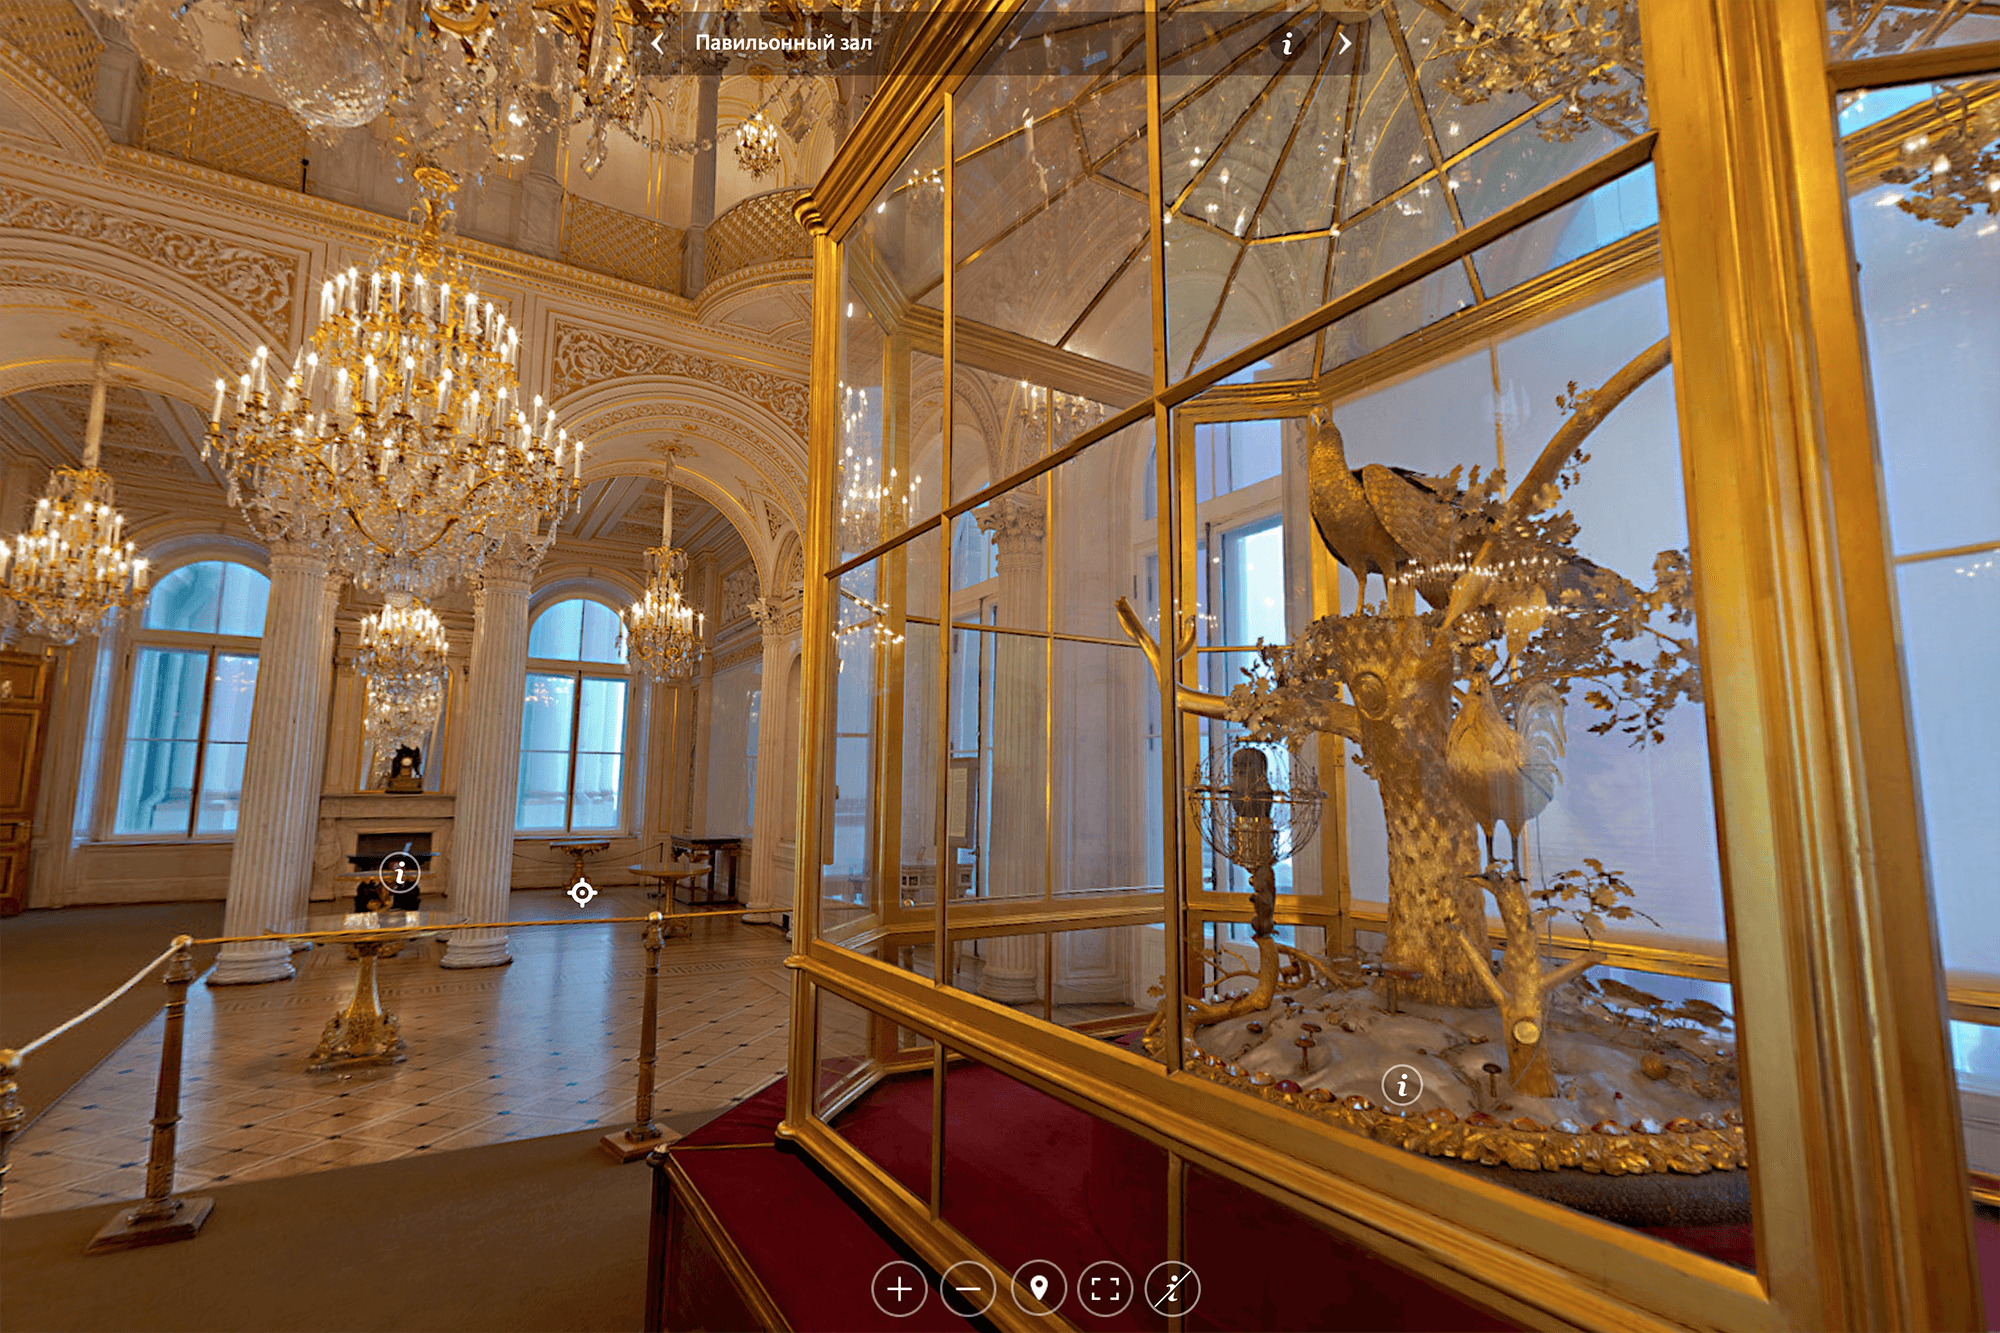 Часы «Павлин», подаренные Екатерине II князем Потемкиным, находятся в Павильонном зале Эрмитажа